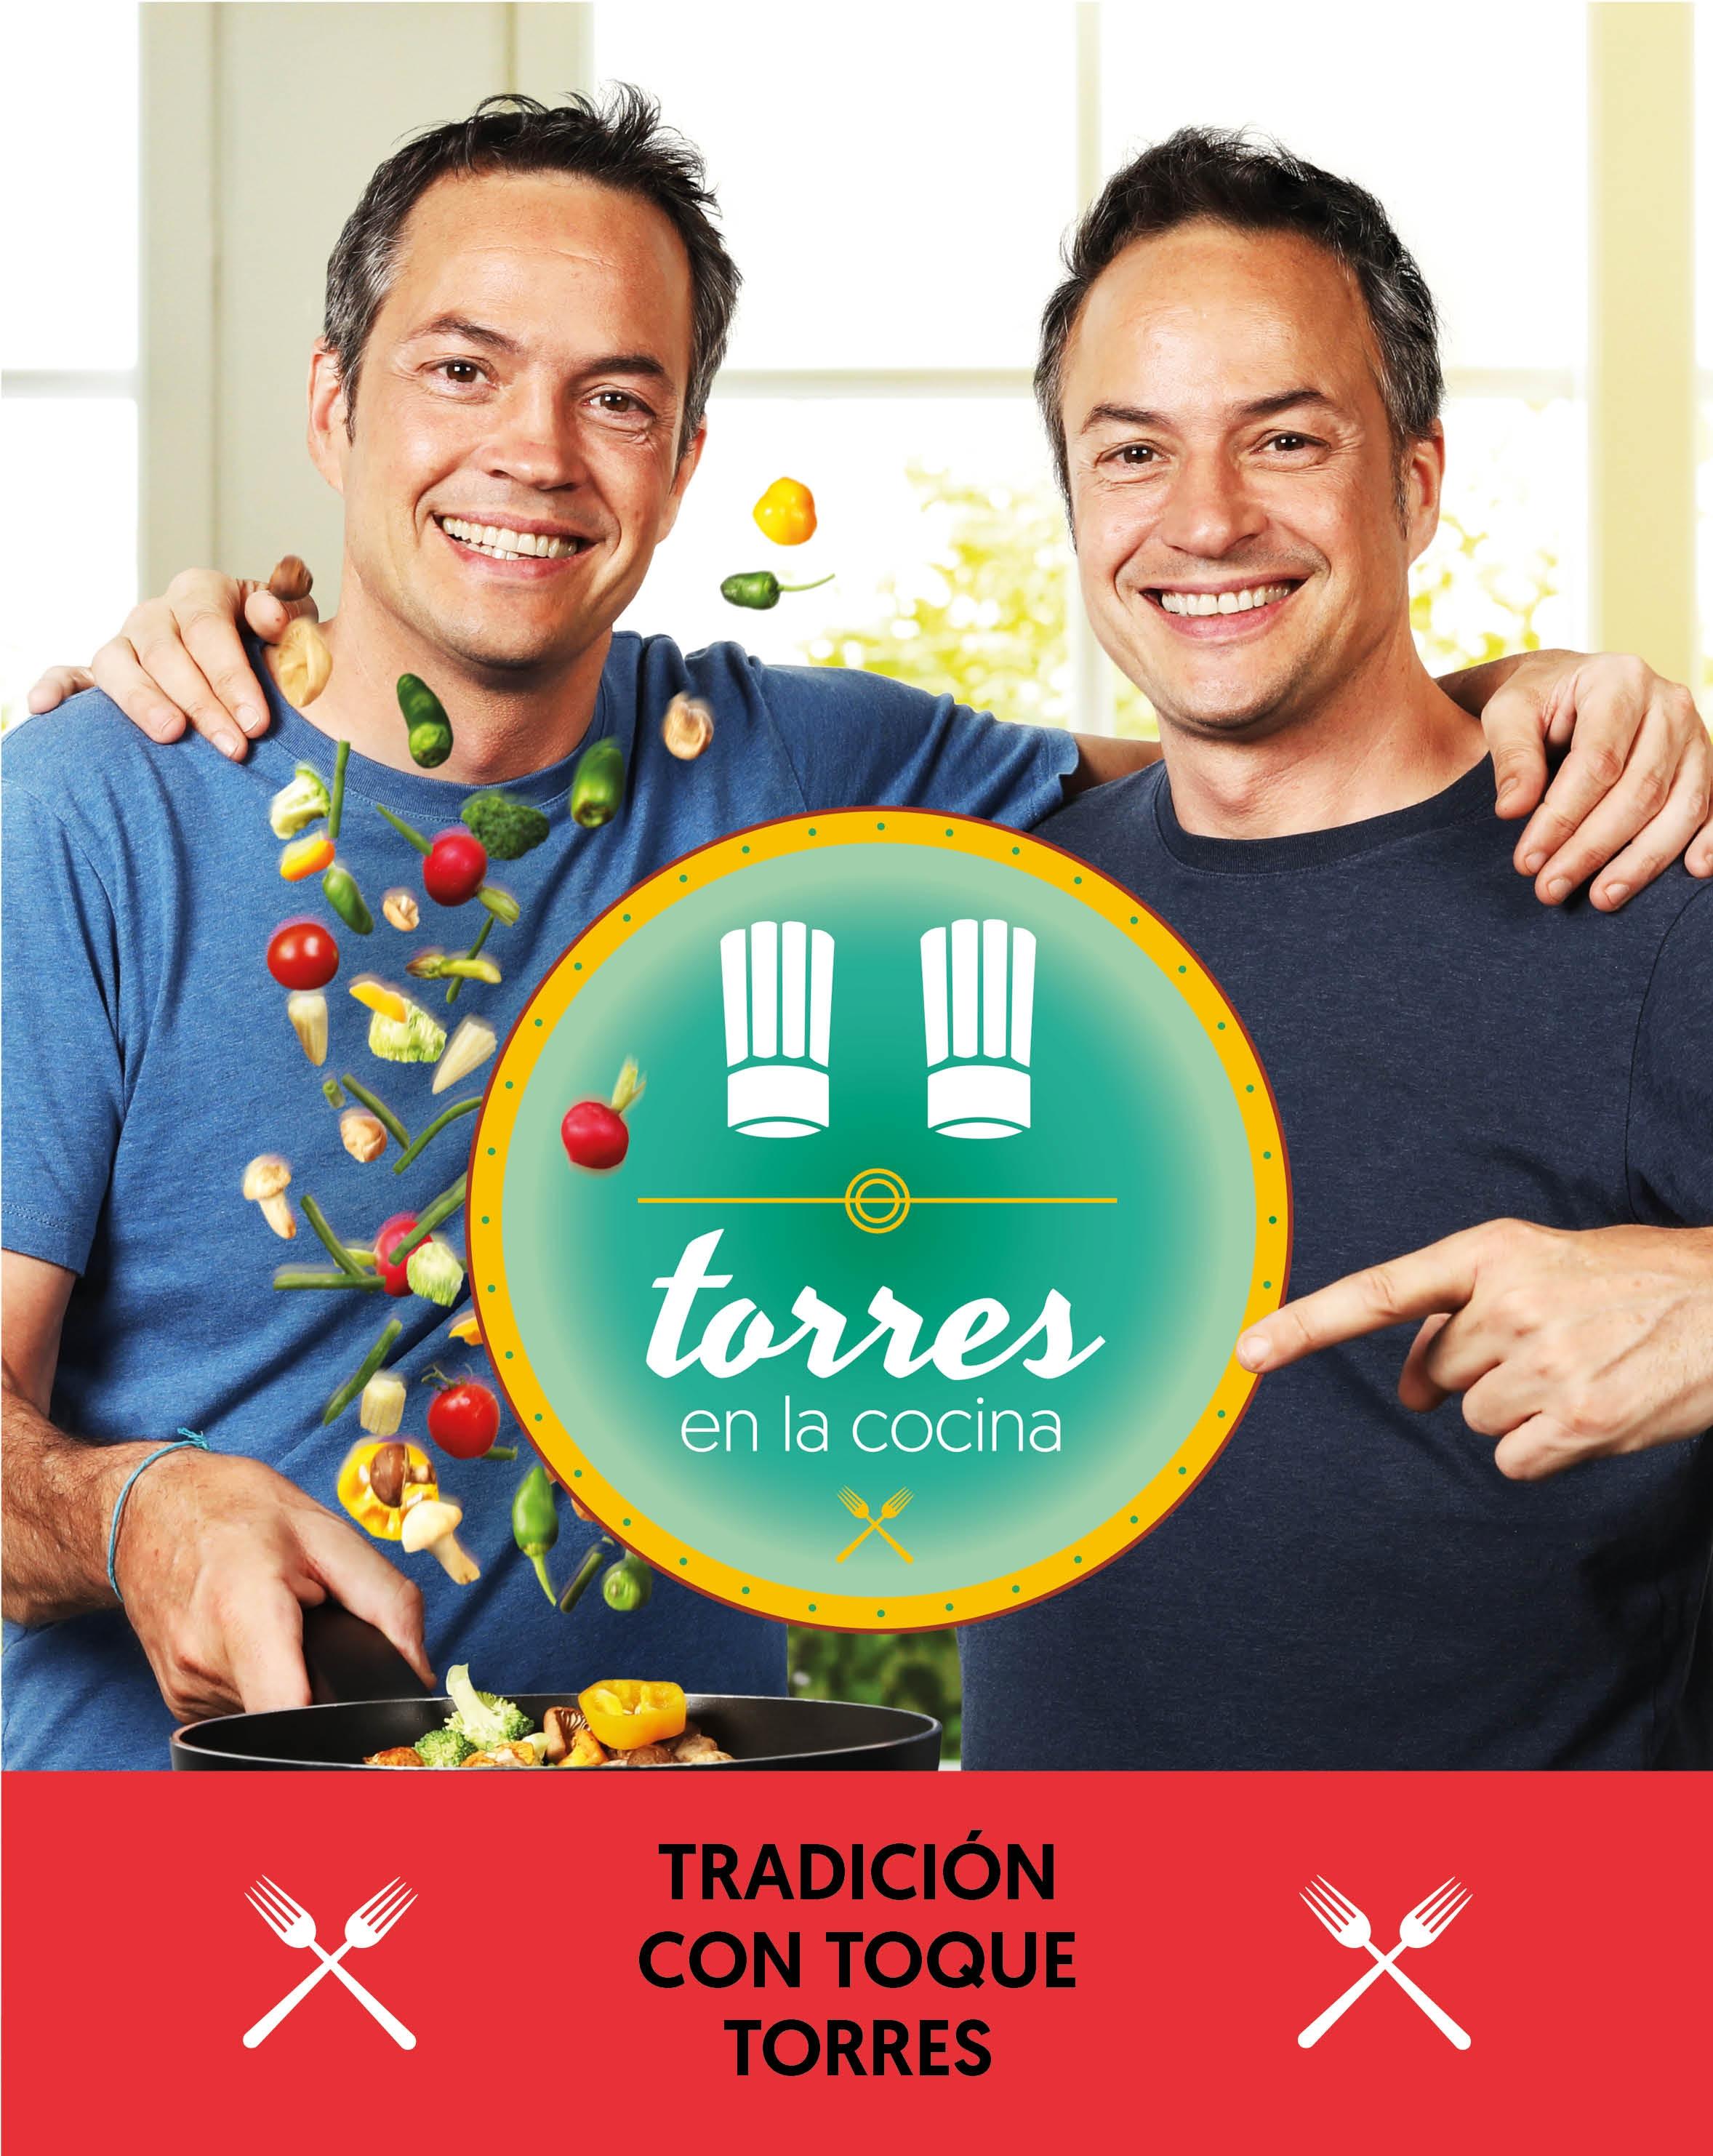 Torres en la Cocina 3 "Tradición con Toque Torres". 